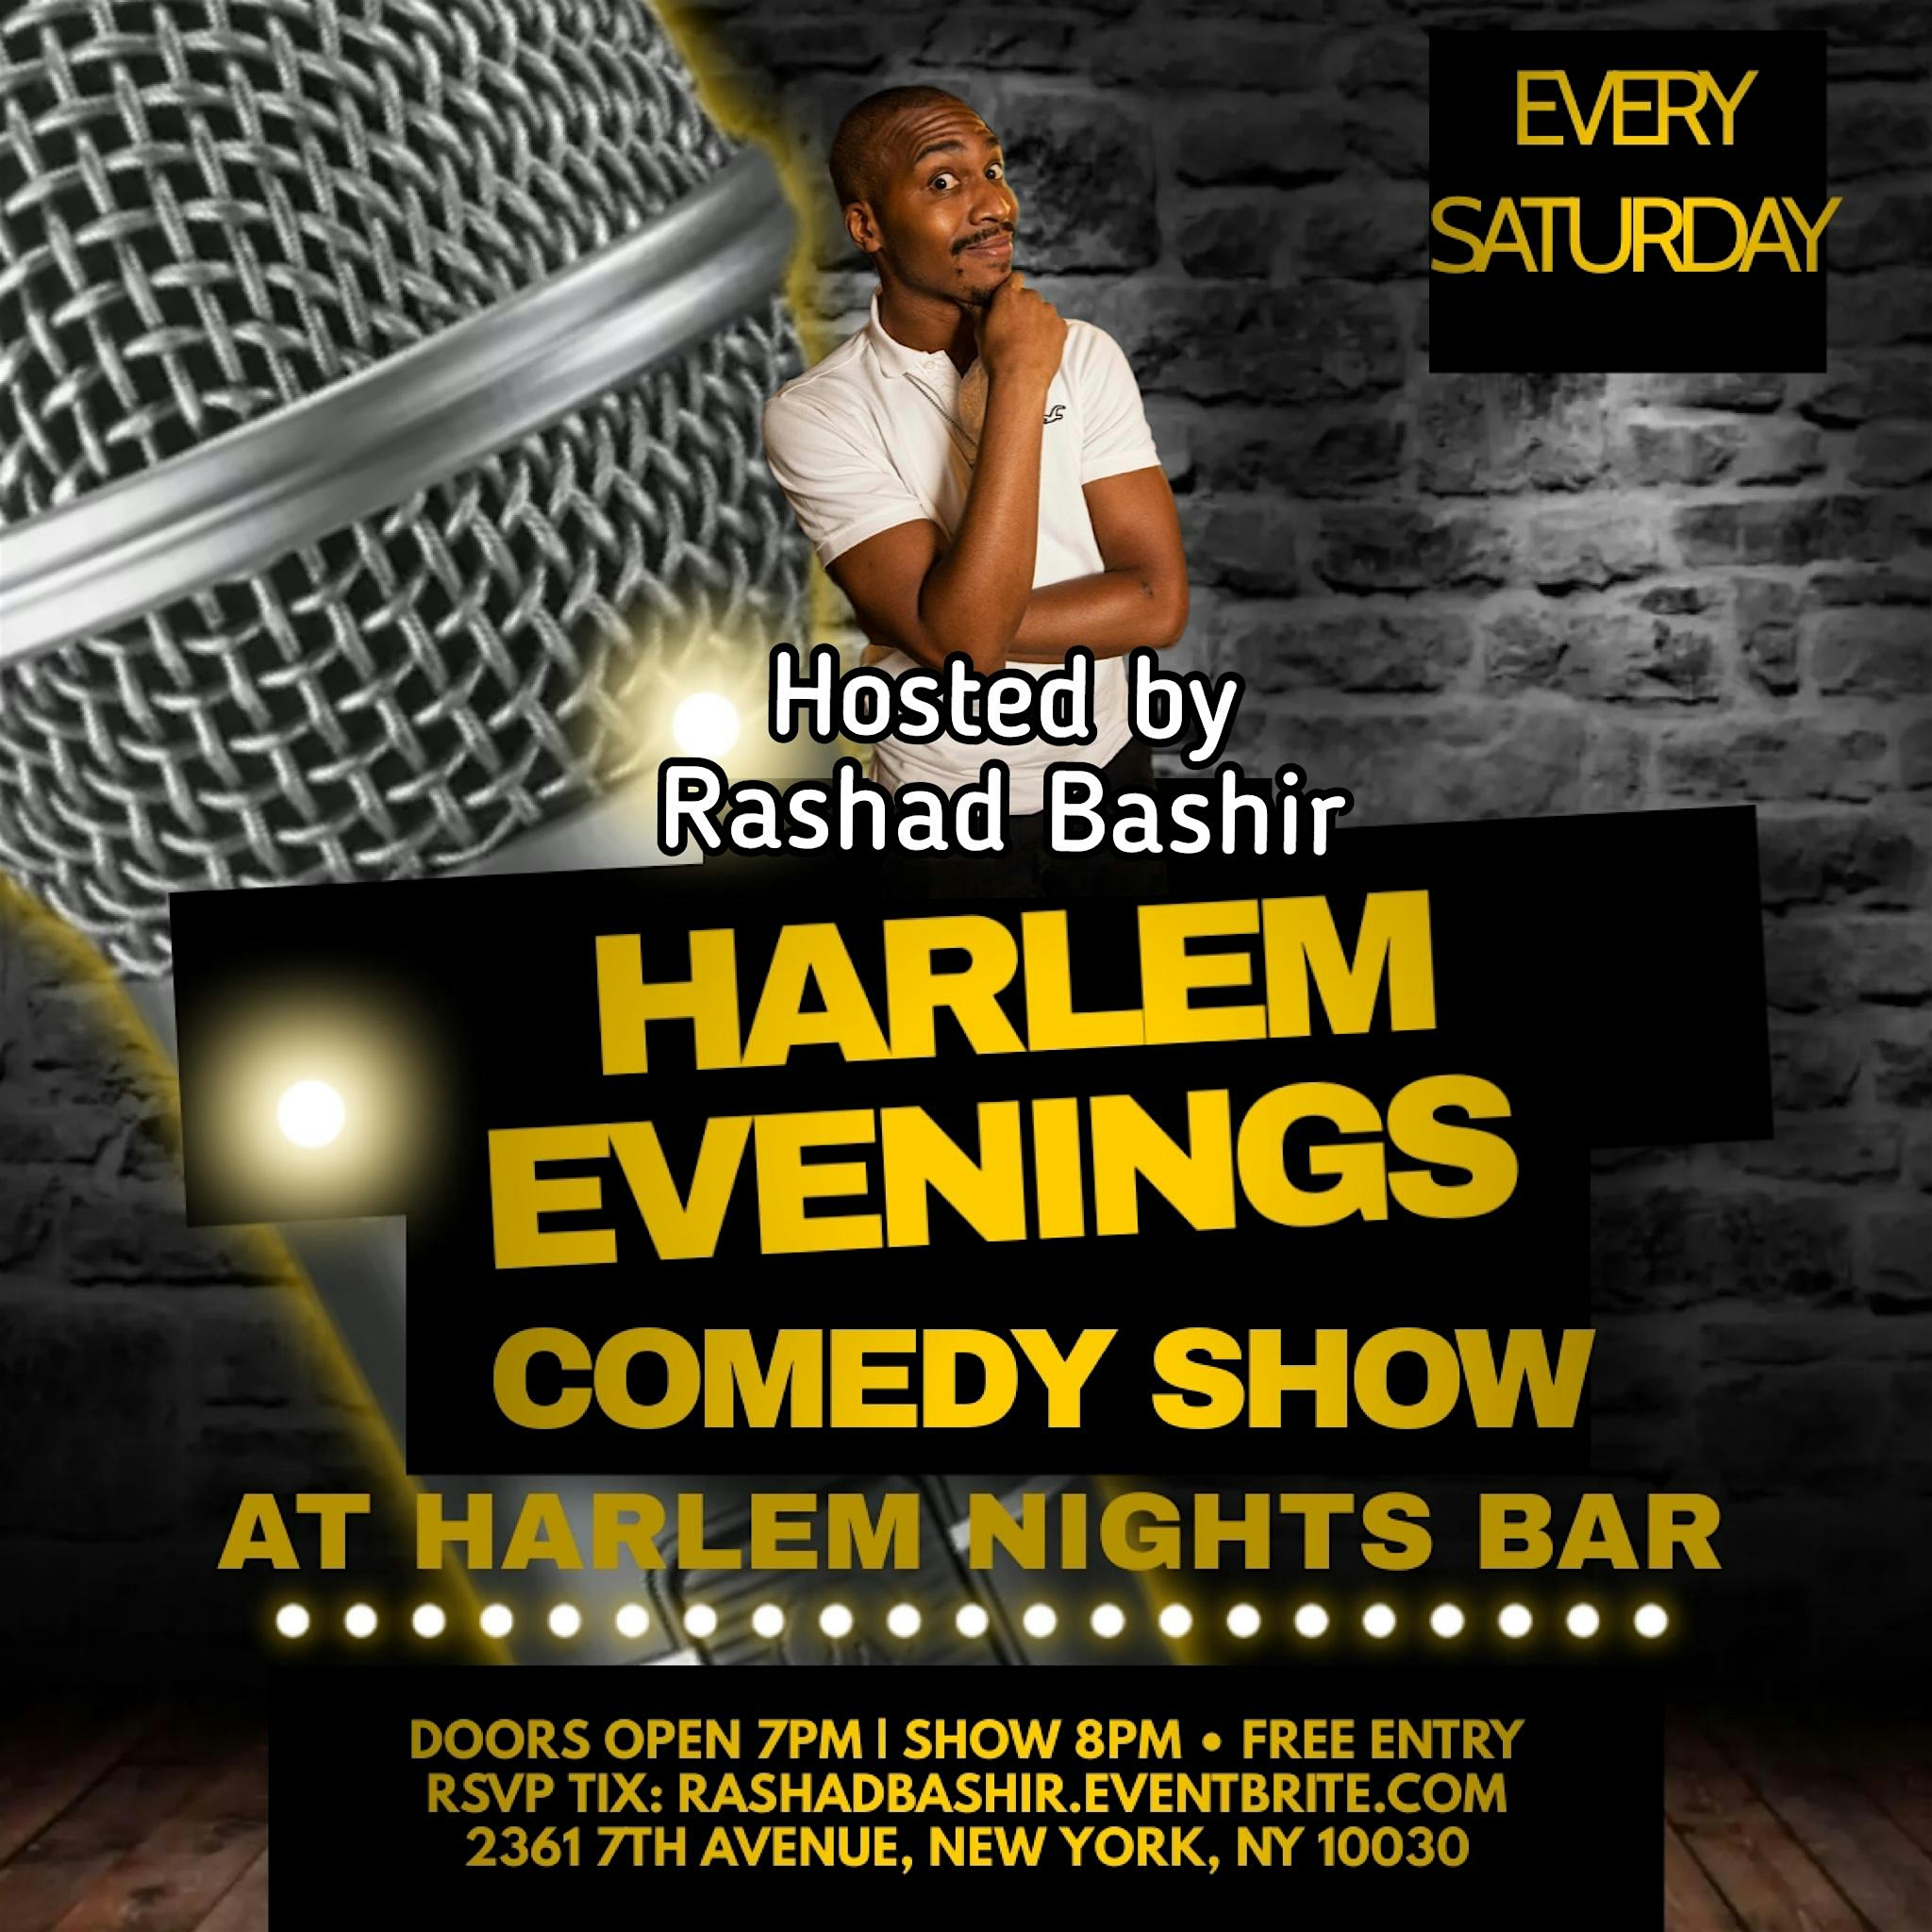 Harlem Evenings Comedy Show